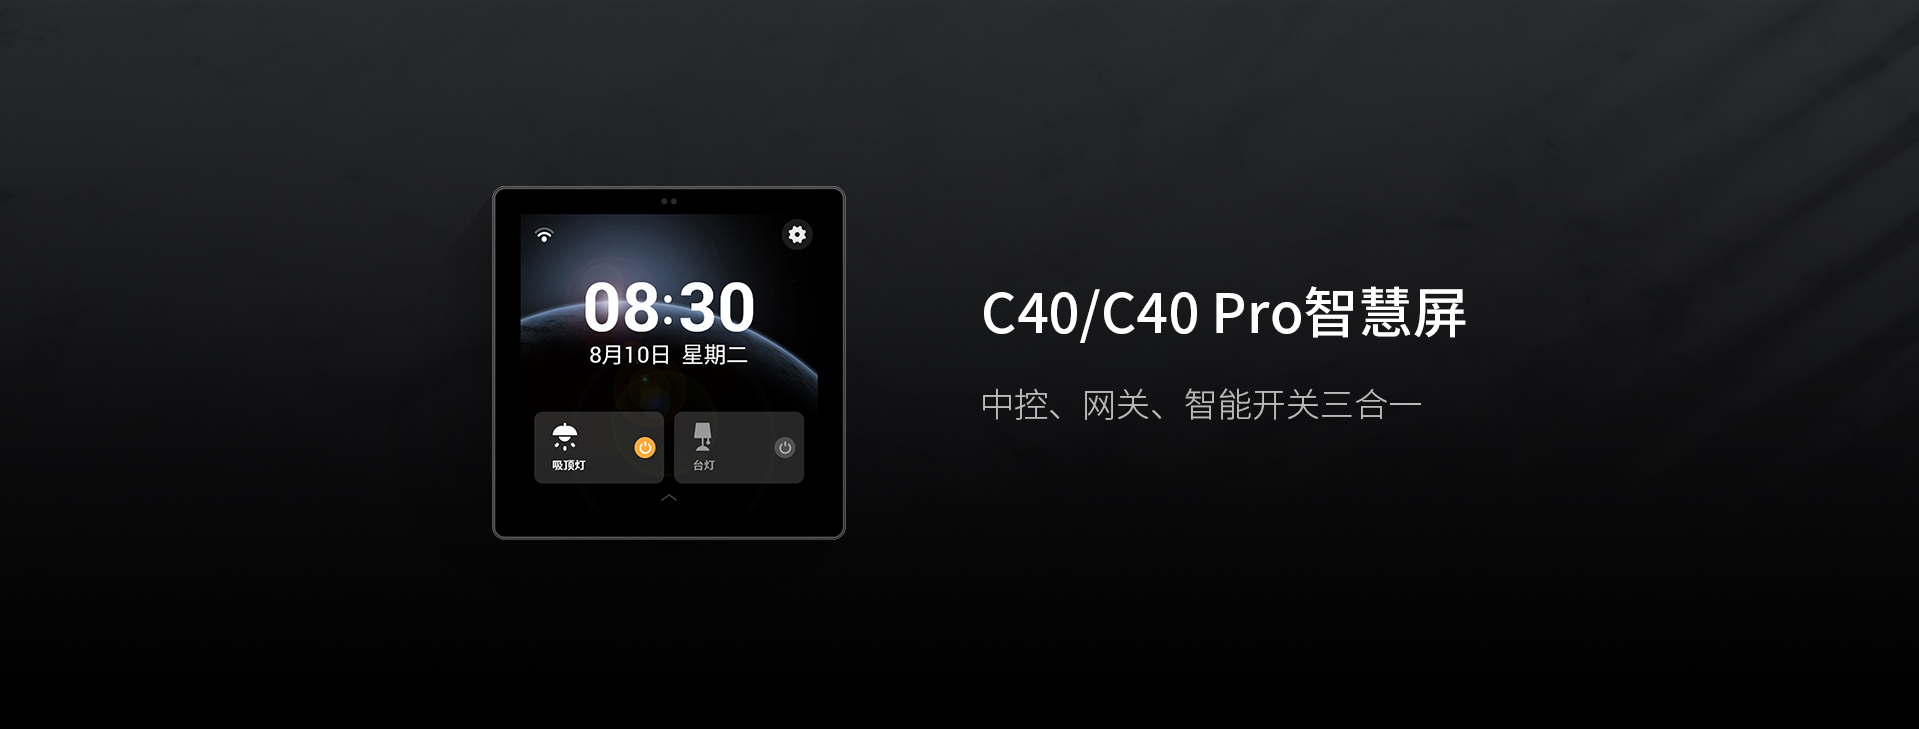 C40/C40 Pro智能屏